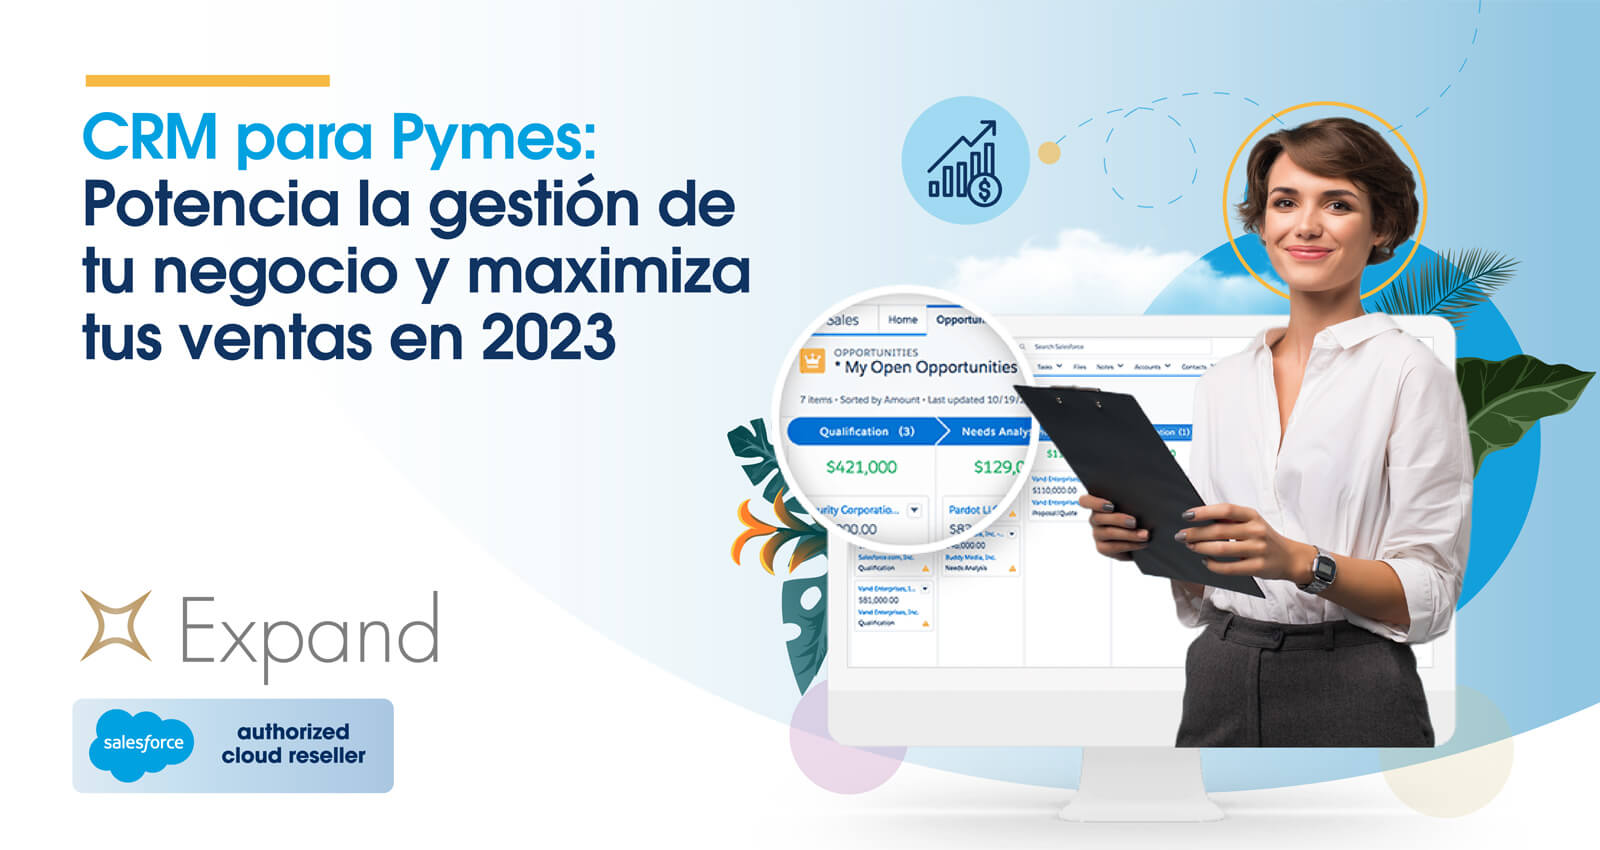 CRM para Pymes: Potencia la gestión de tu negocio y maximiza tus ventas en 2023